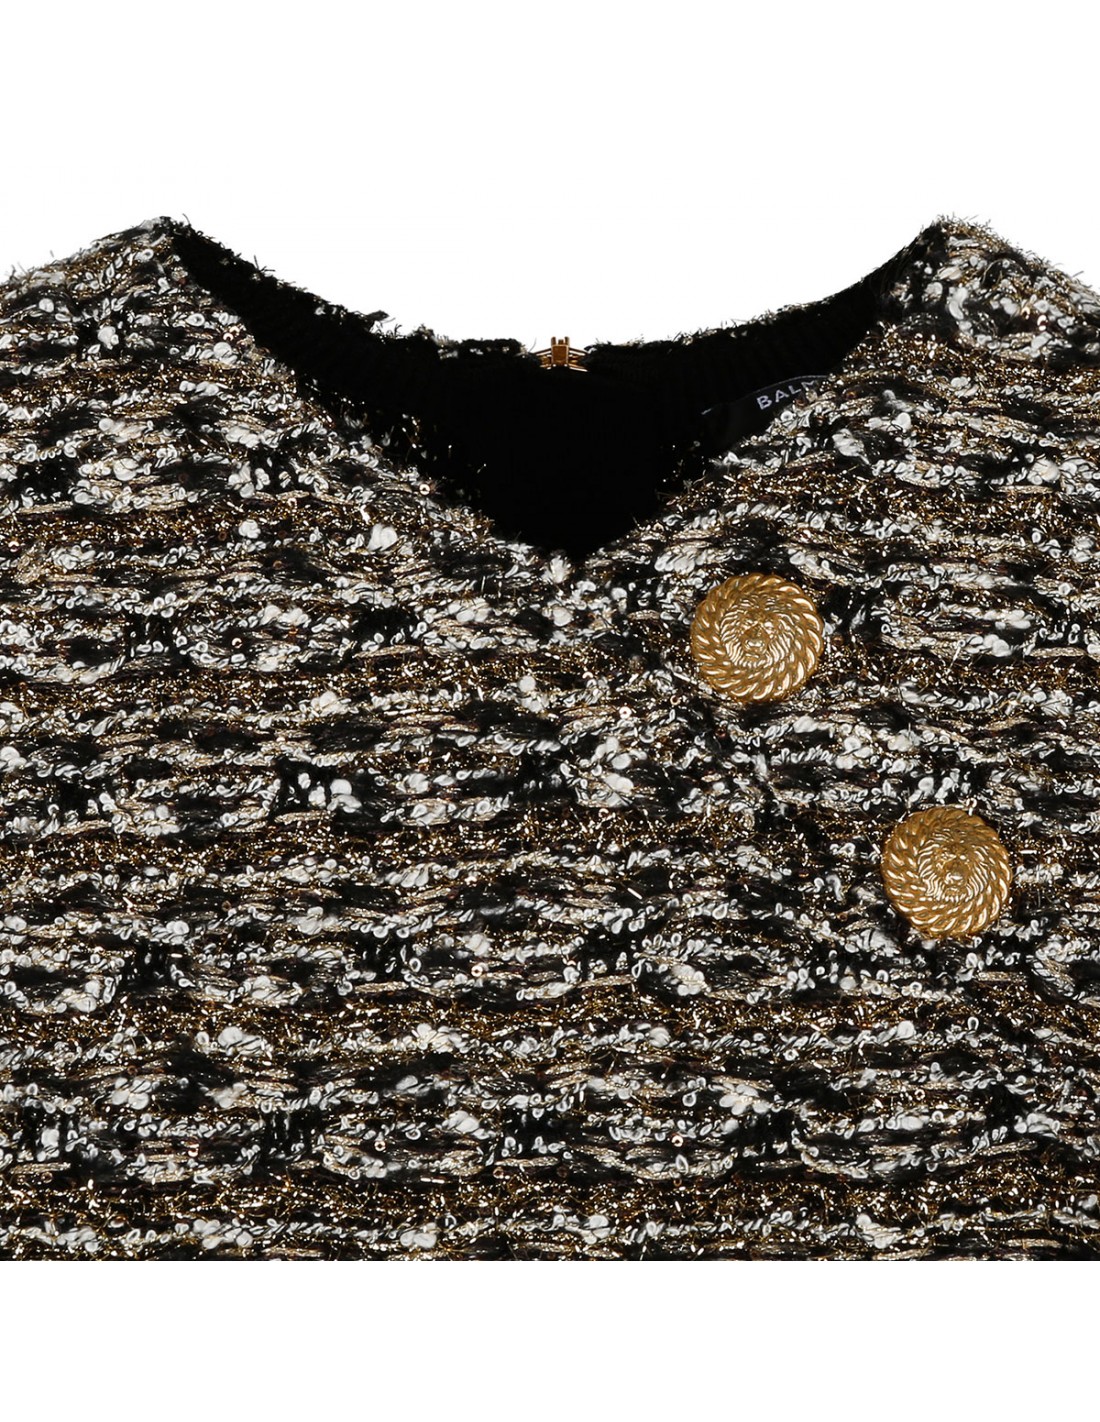 Gold lurex tweed dress